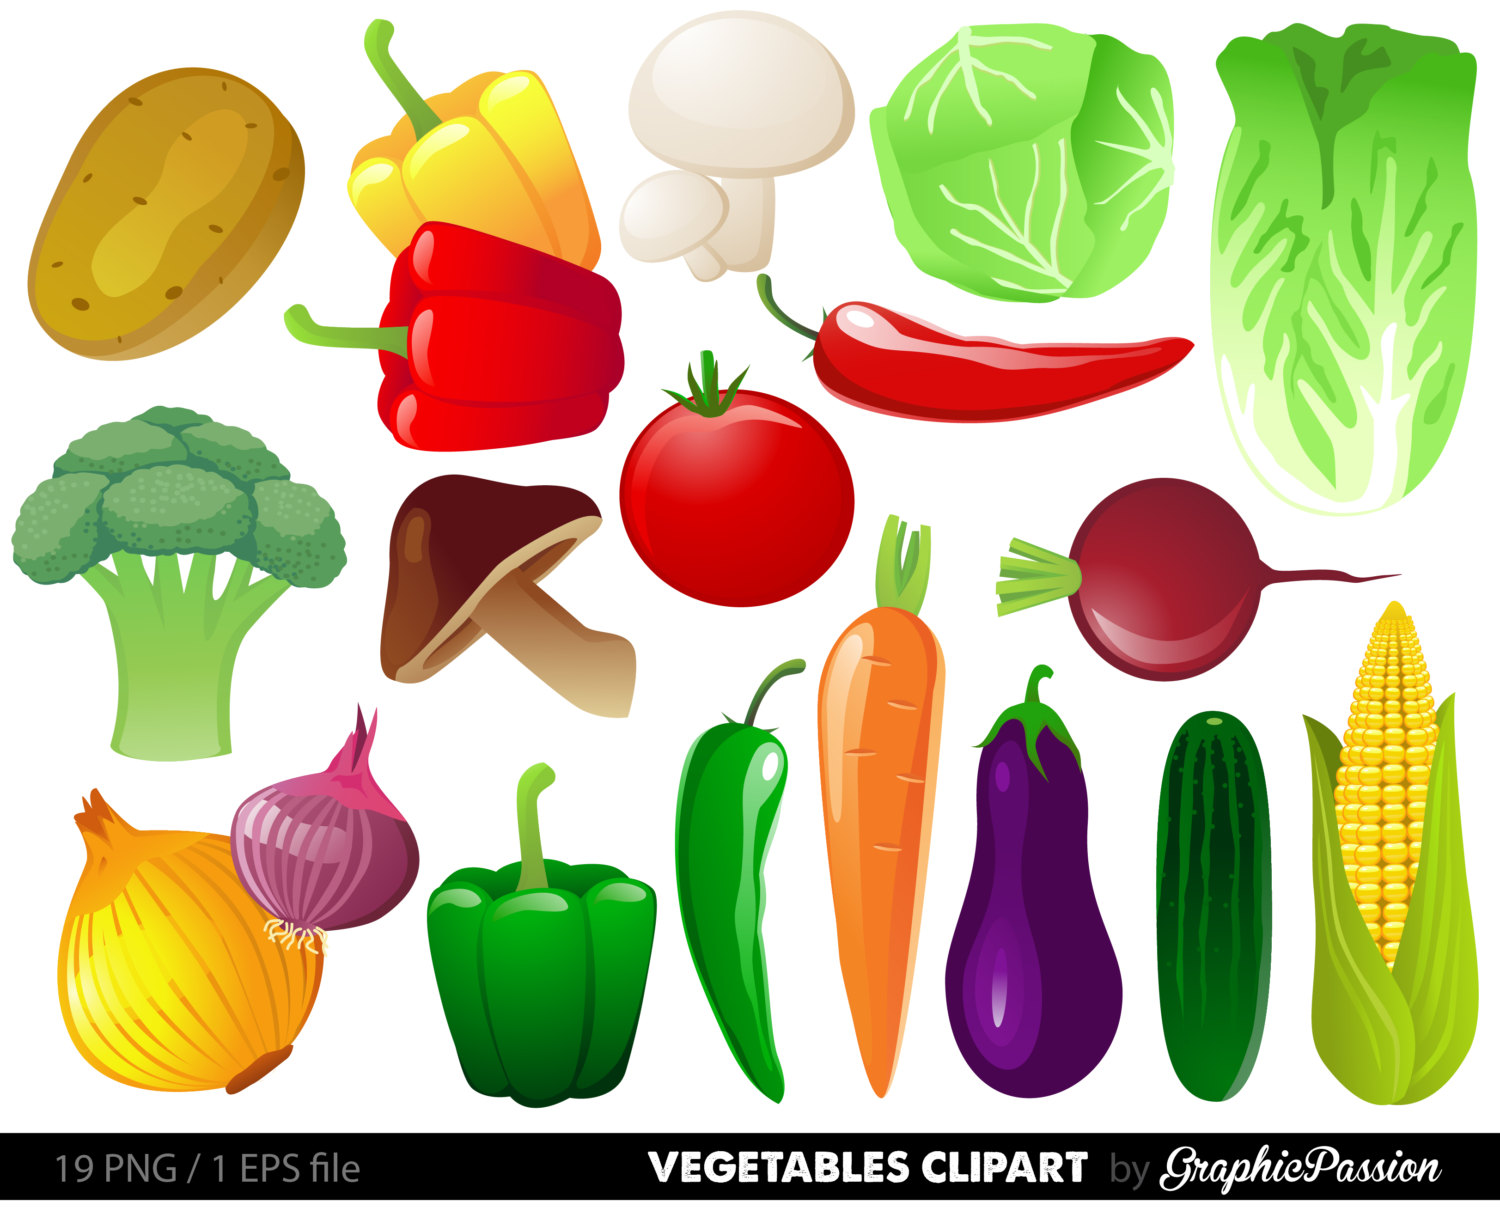 Vegetables clipart digital ve - Veggie Clip Art